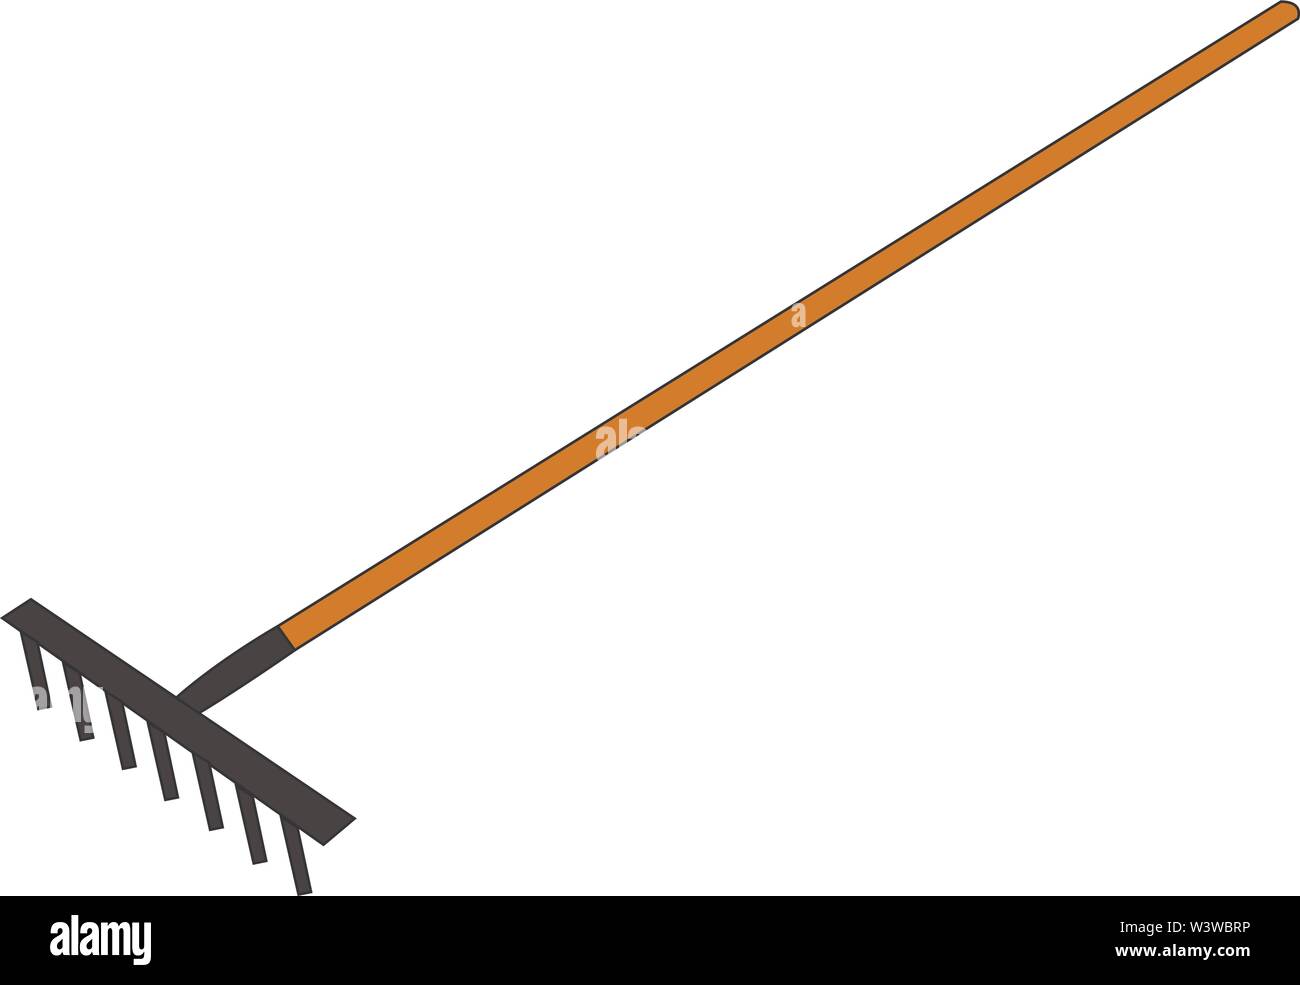 Long rake, illustration, vector on white background Stock Vector Image ...